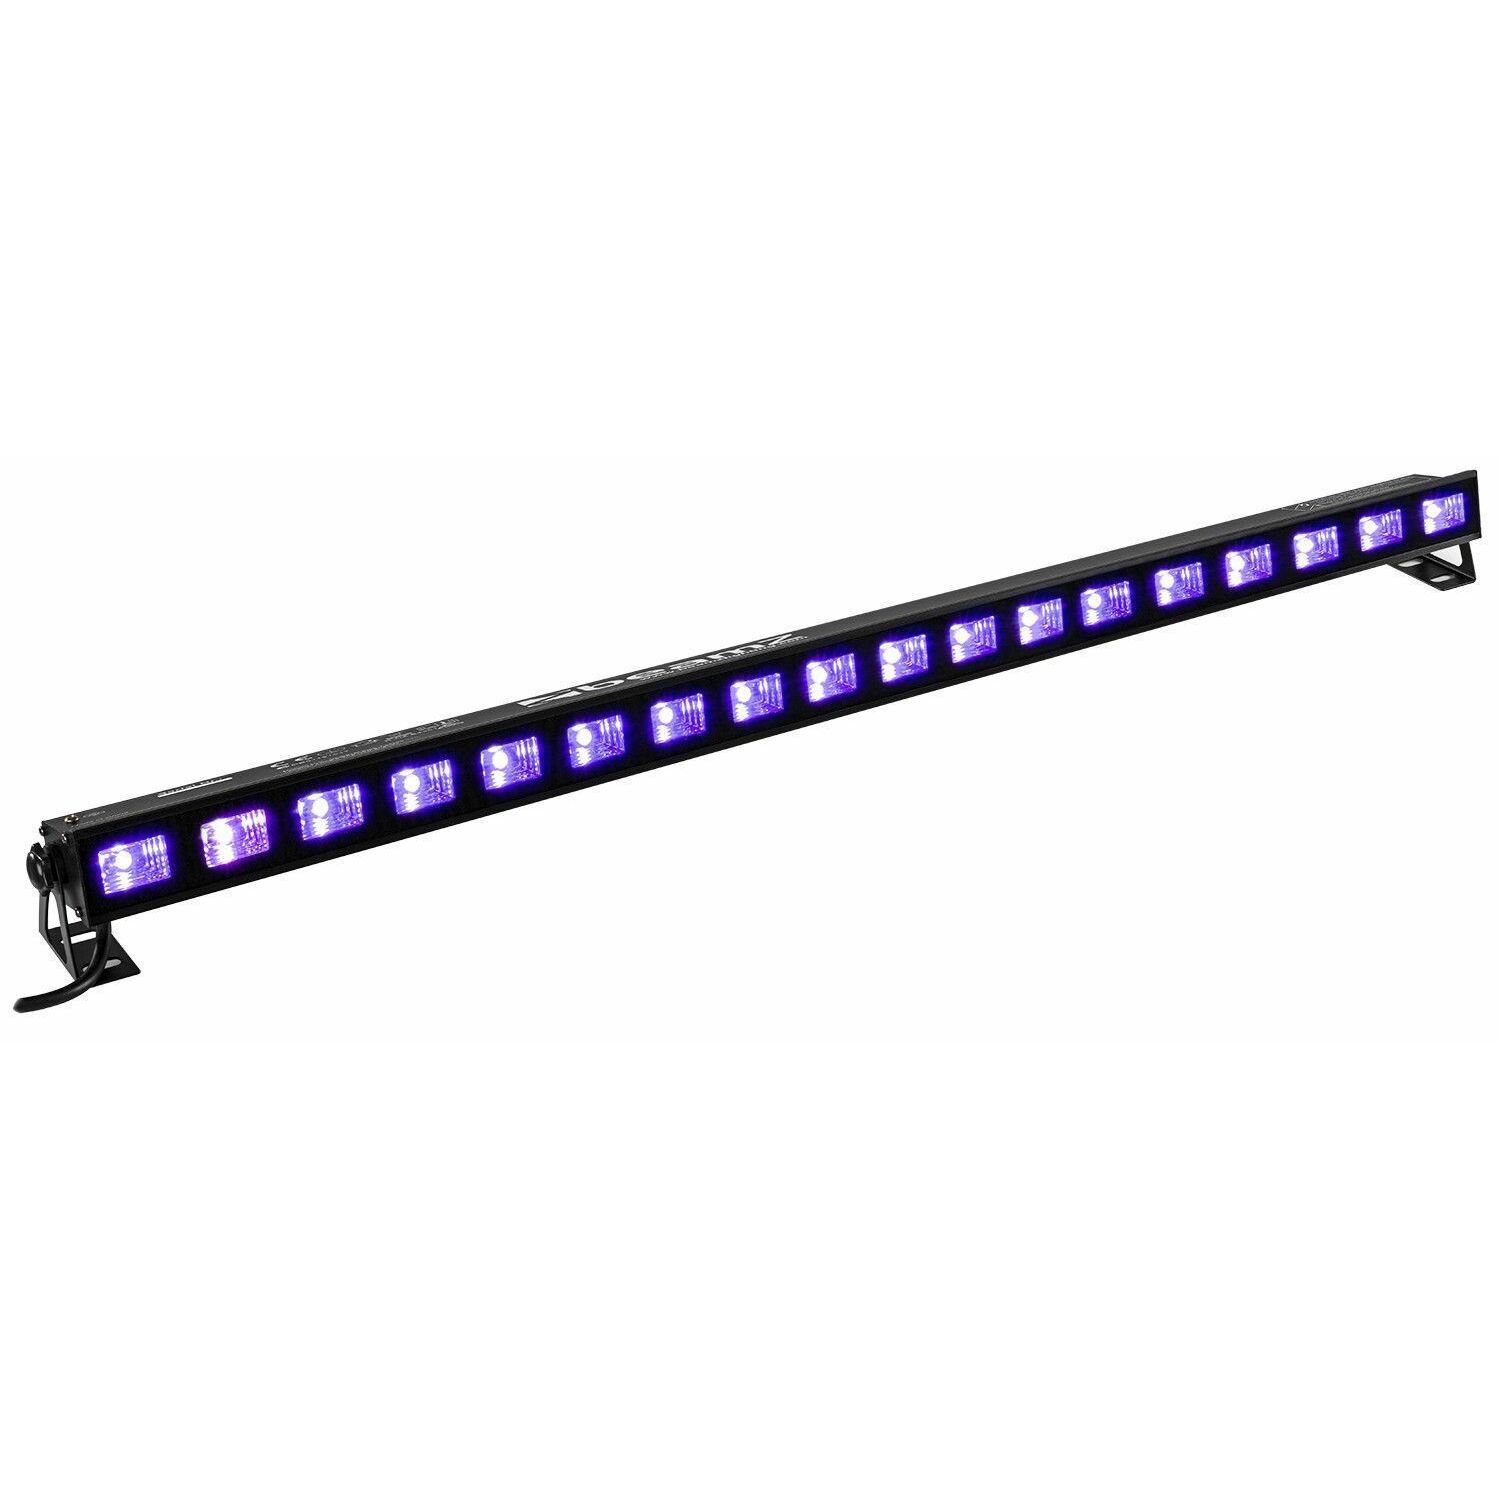 Retourdeal - BeamZ BUV183 LED UV blacklight bar